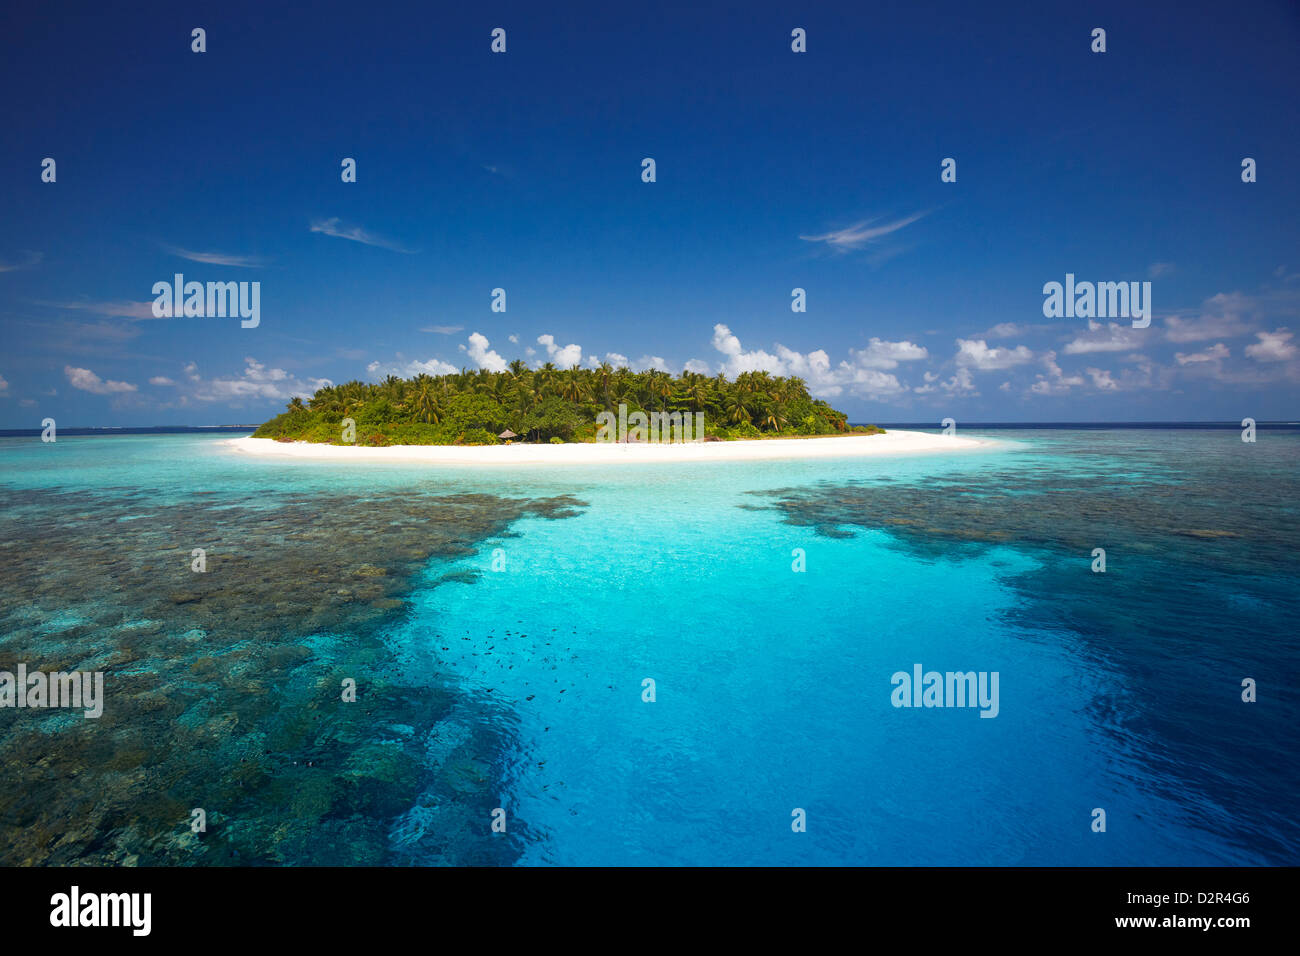 Tropische Insel und Lagune, Malediven, Indischer Ozean, Asien Stockfoto